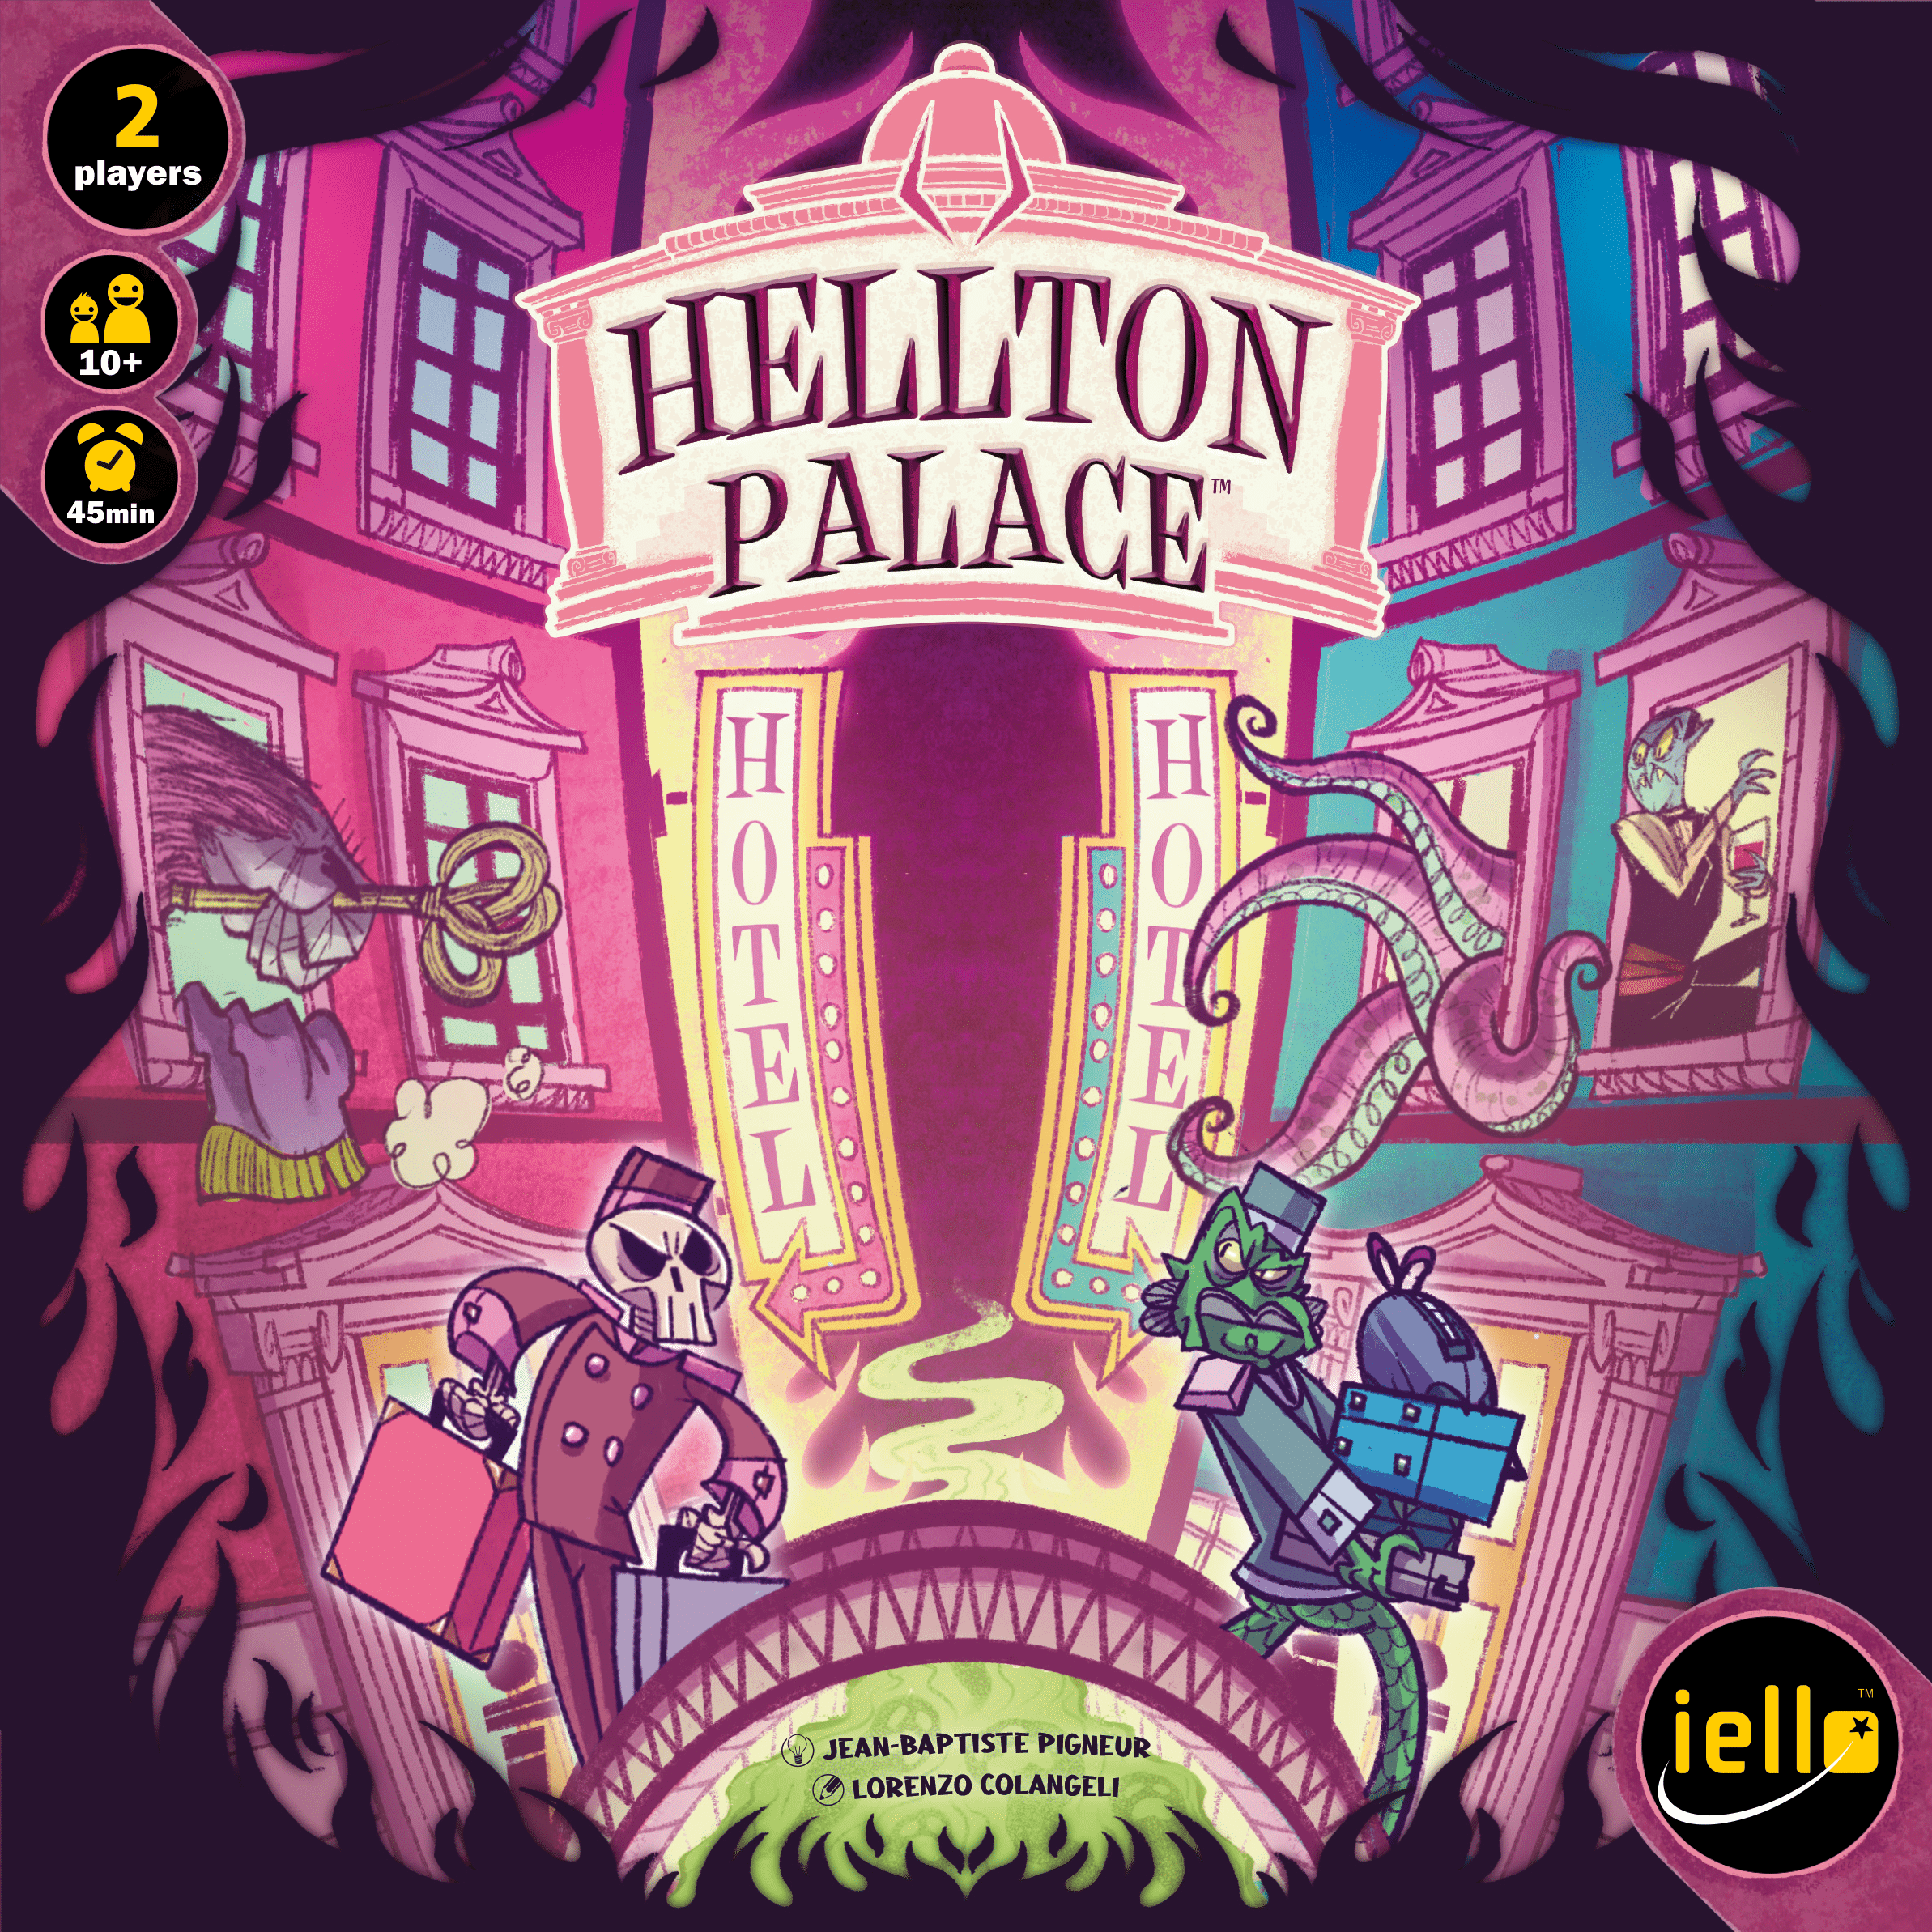 Hellton Palace - IELLO